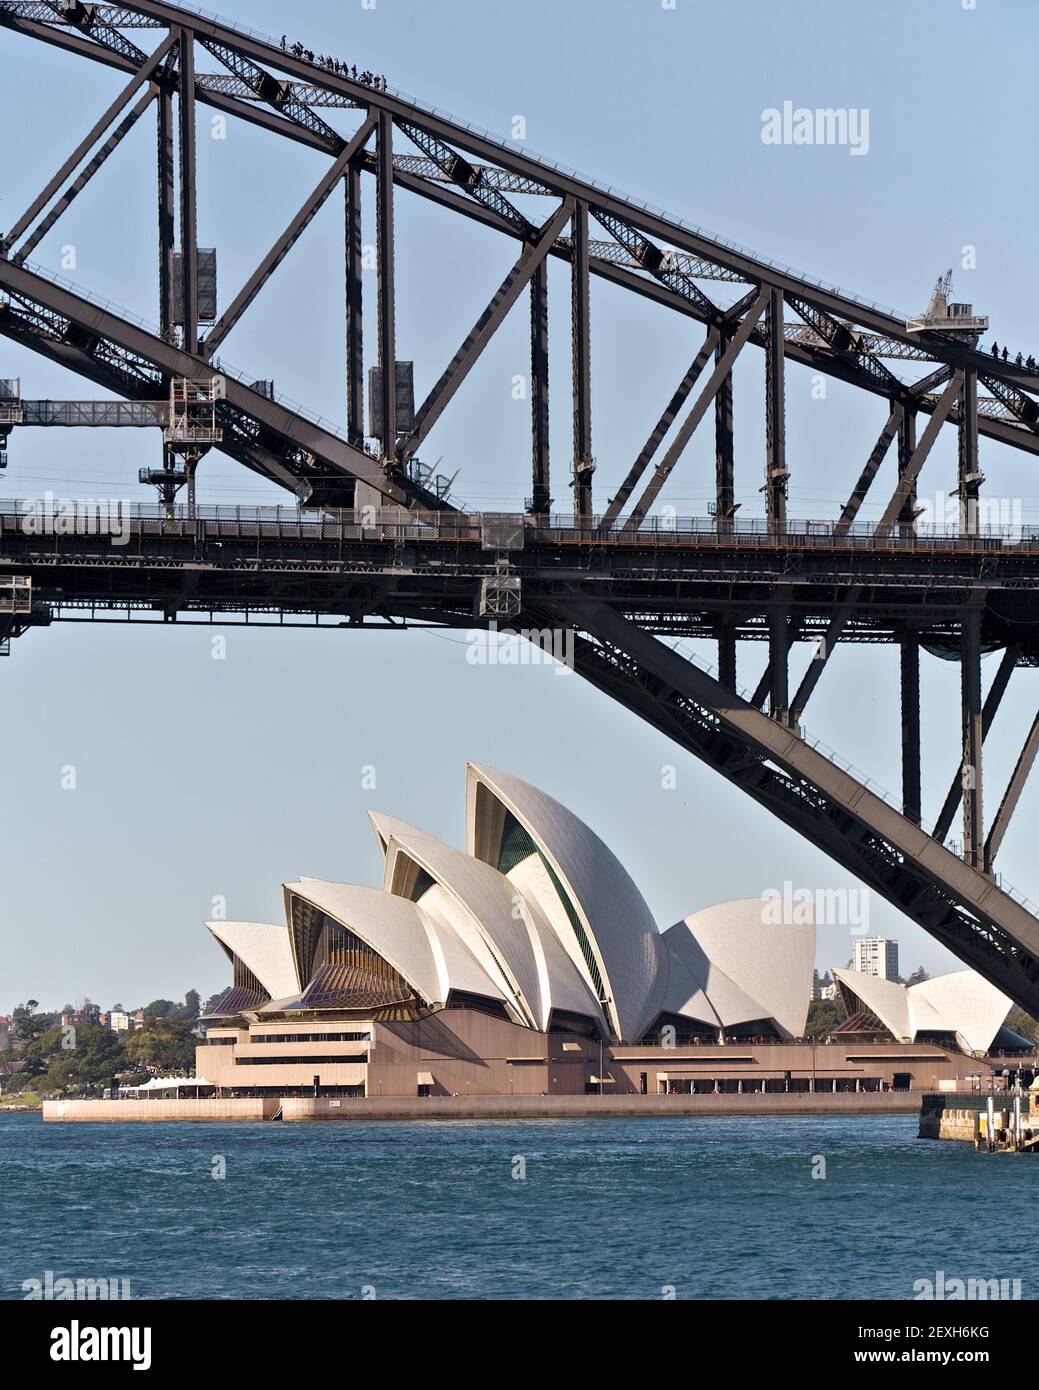 Opéra de Sydney et Harbour Bridge Australie Banque D'Images